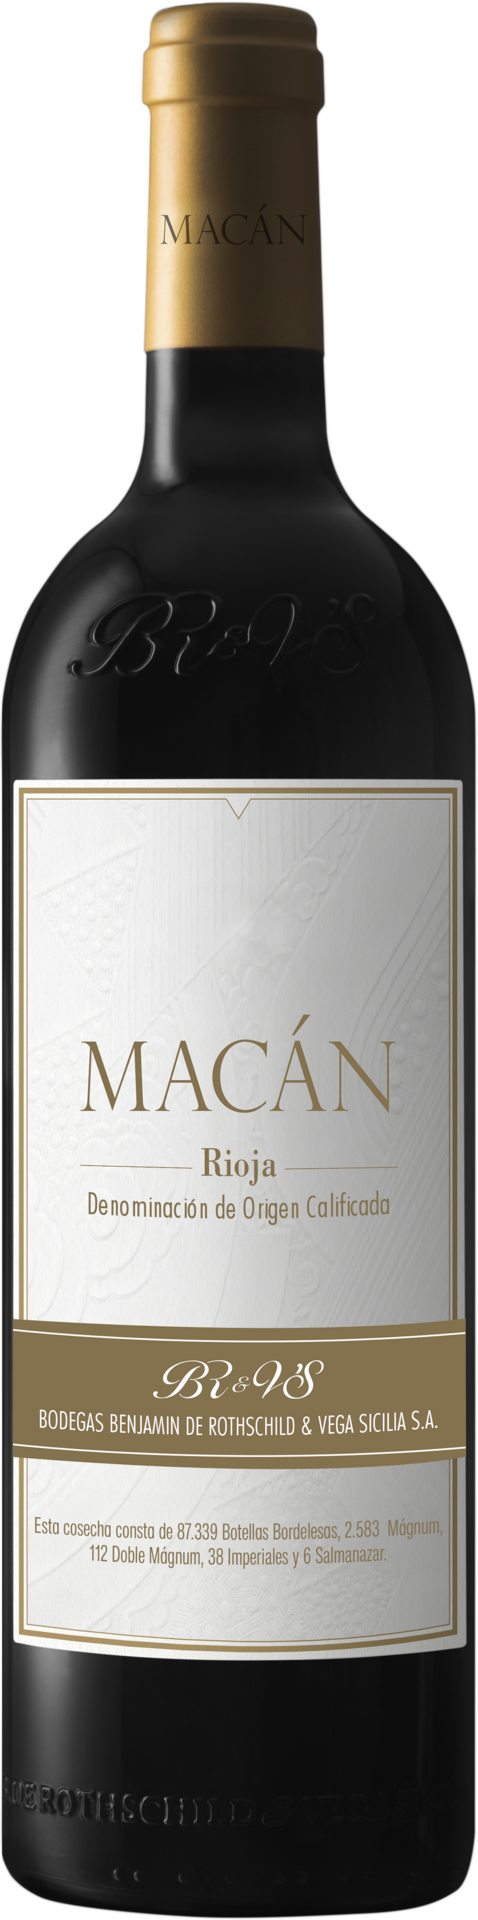 Macán 2019 Rioja